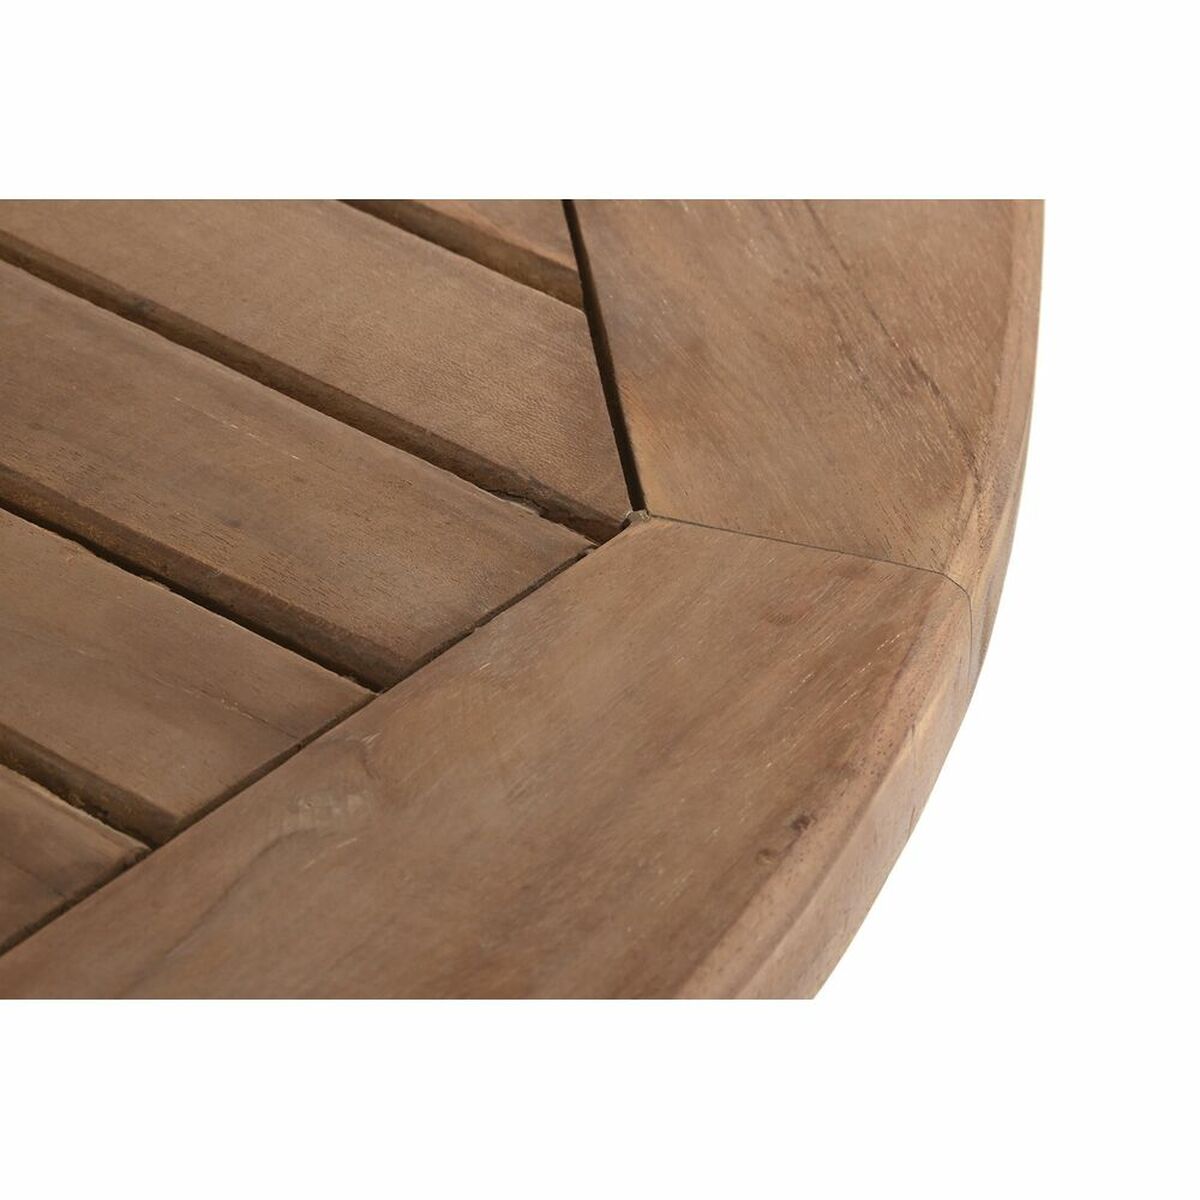 Ensemble Table de jardin extensible + 8 Chaises Design Bali Home Decor Teck (180 x 120 x 75 cm) (9 pcs)